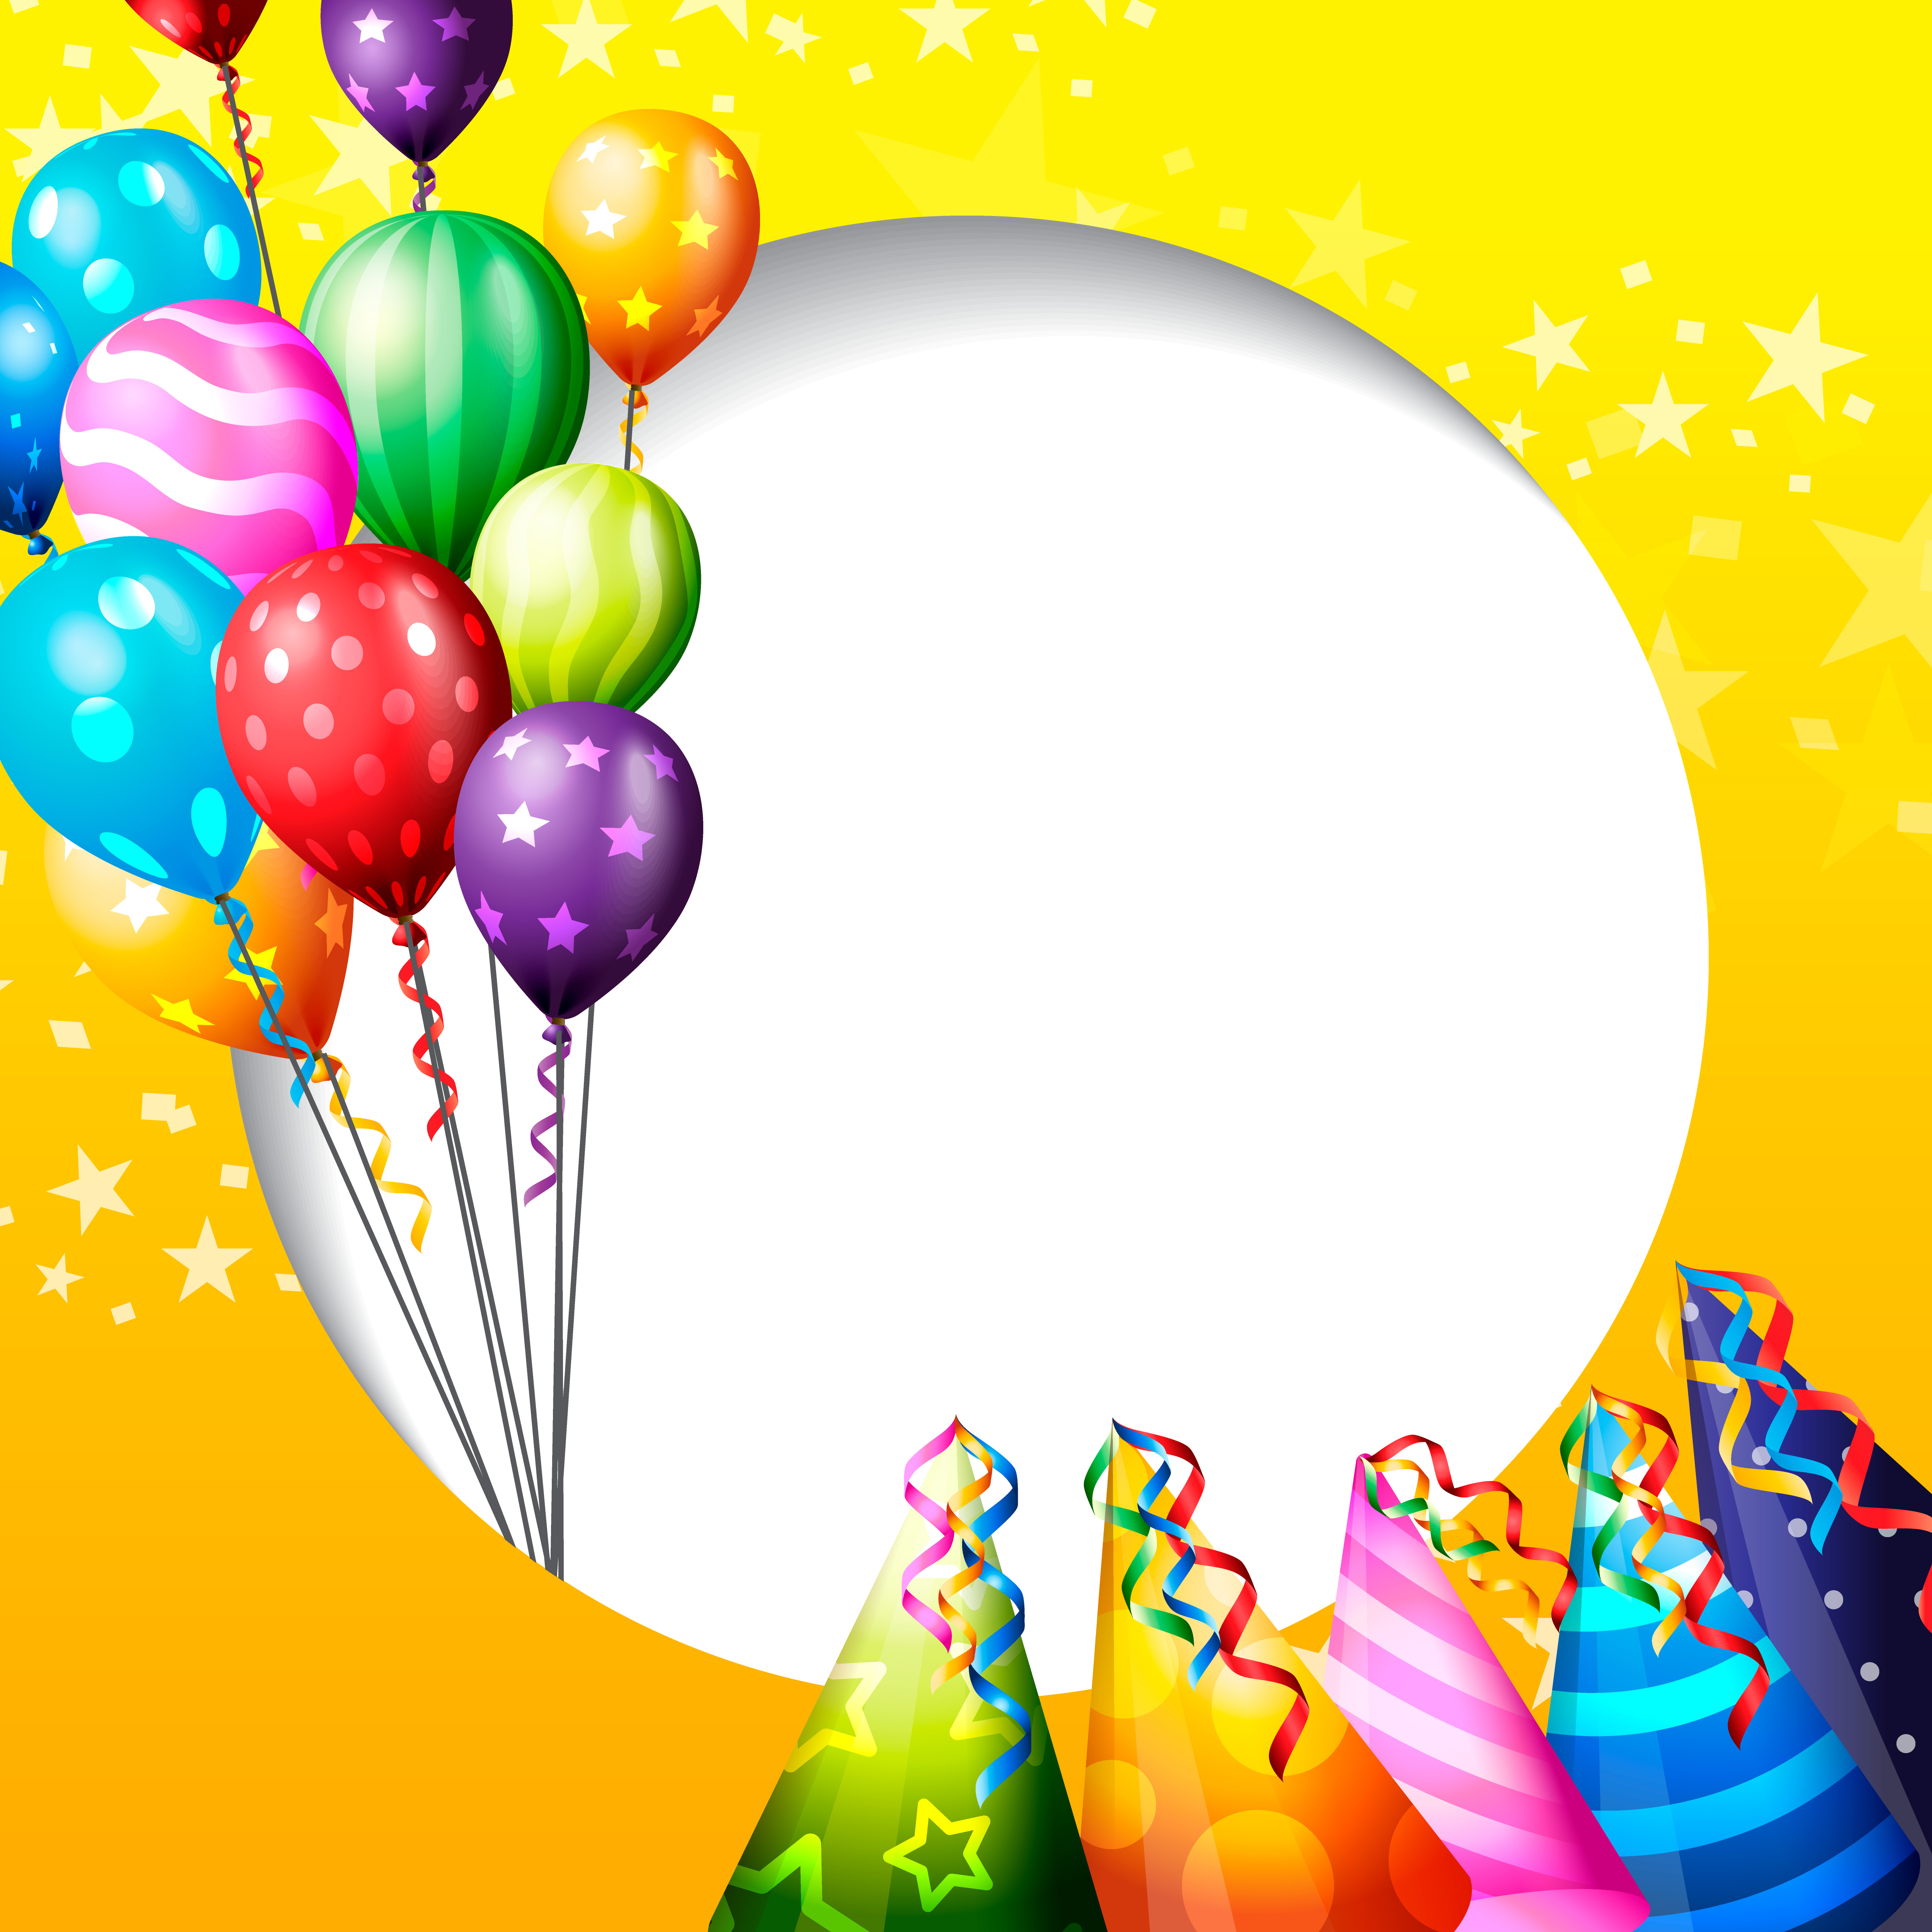 Hot Air Balloon iPhone Wallpaper  iDrop News